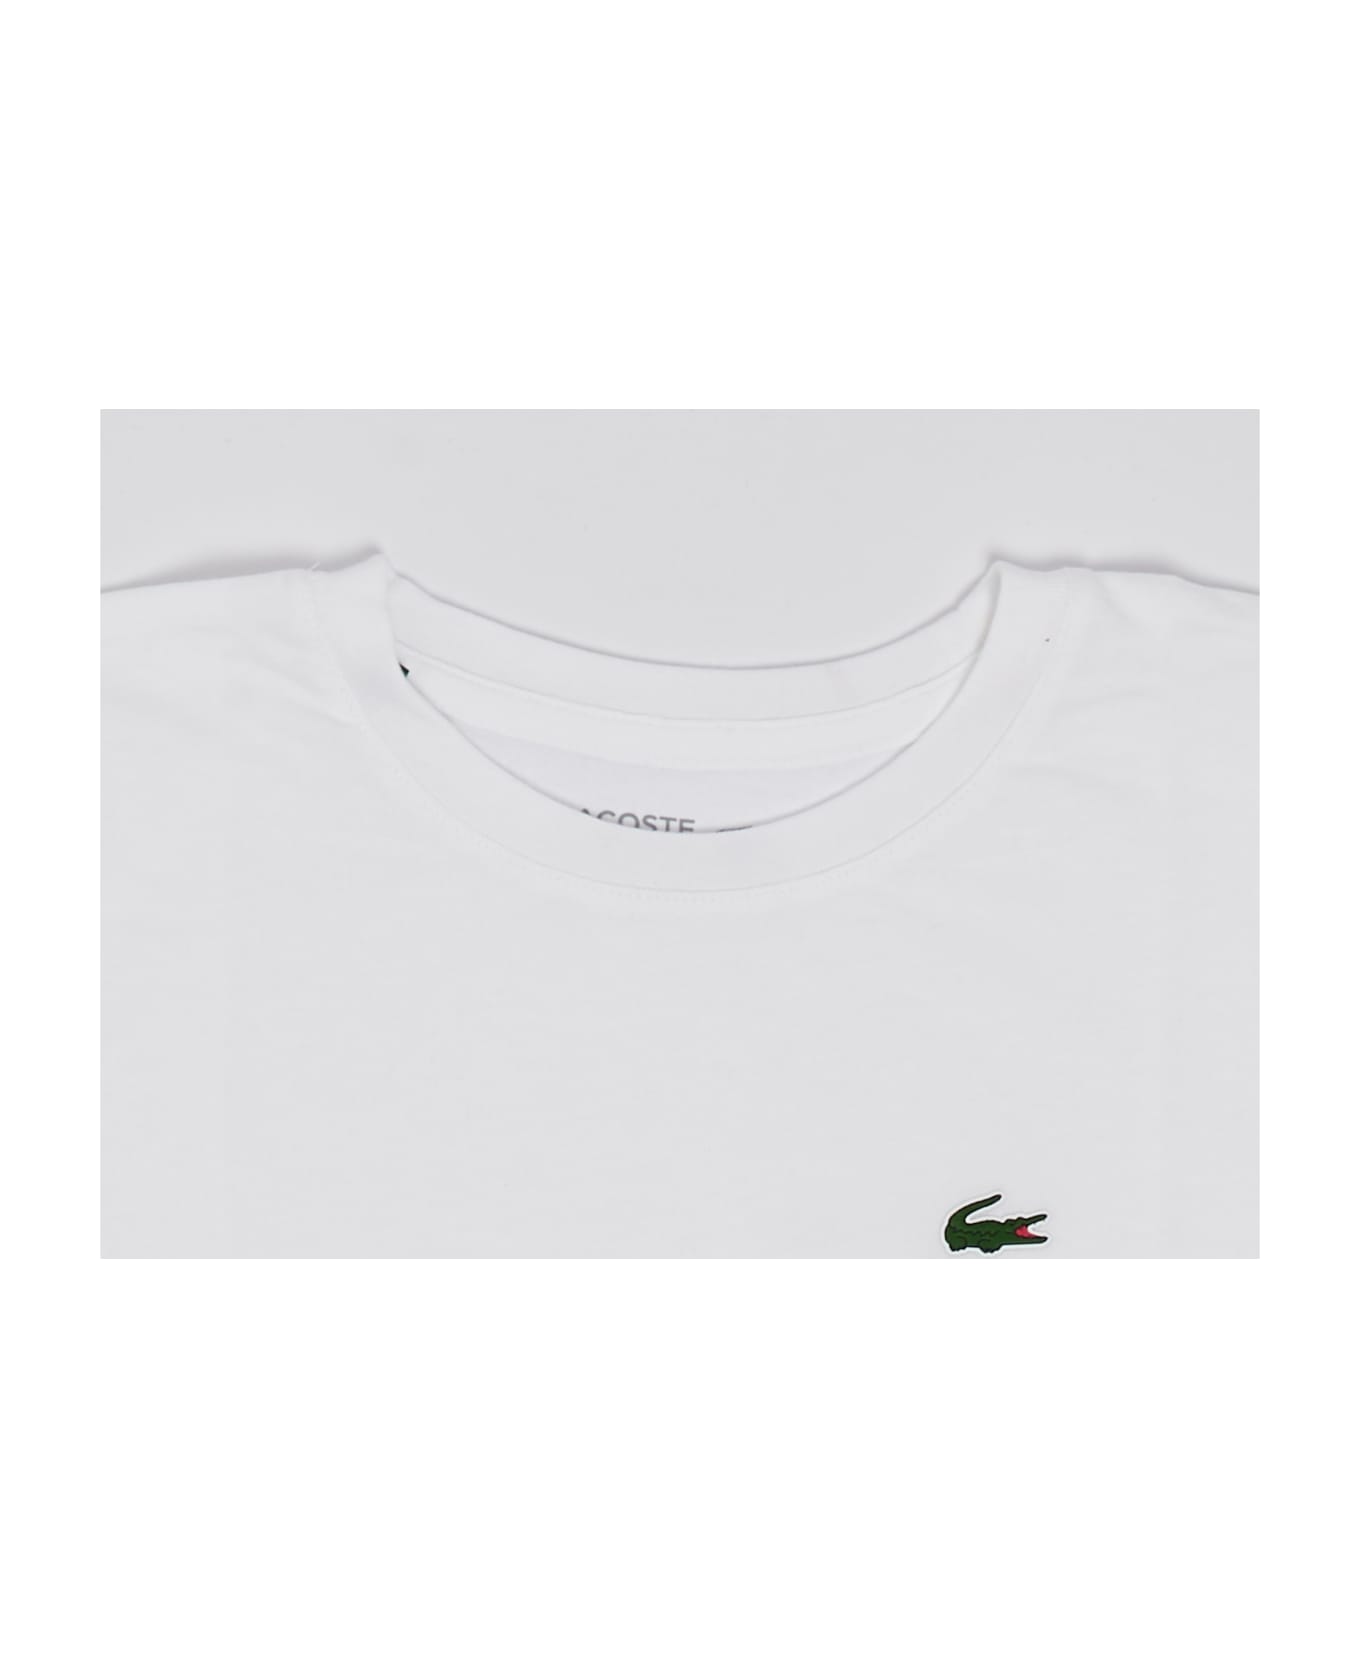 Lacoste T-shirt T-shirt - BIANCO